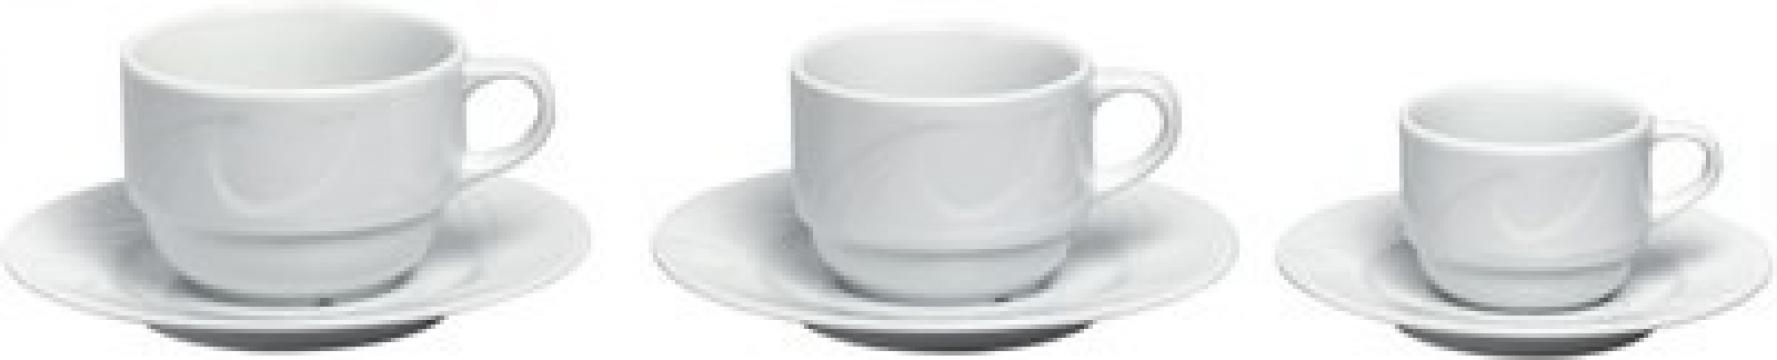 Farfurie cesti cafea/cappuccino (D) 149 mm, portelan de la Clever Services SRL